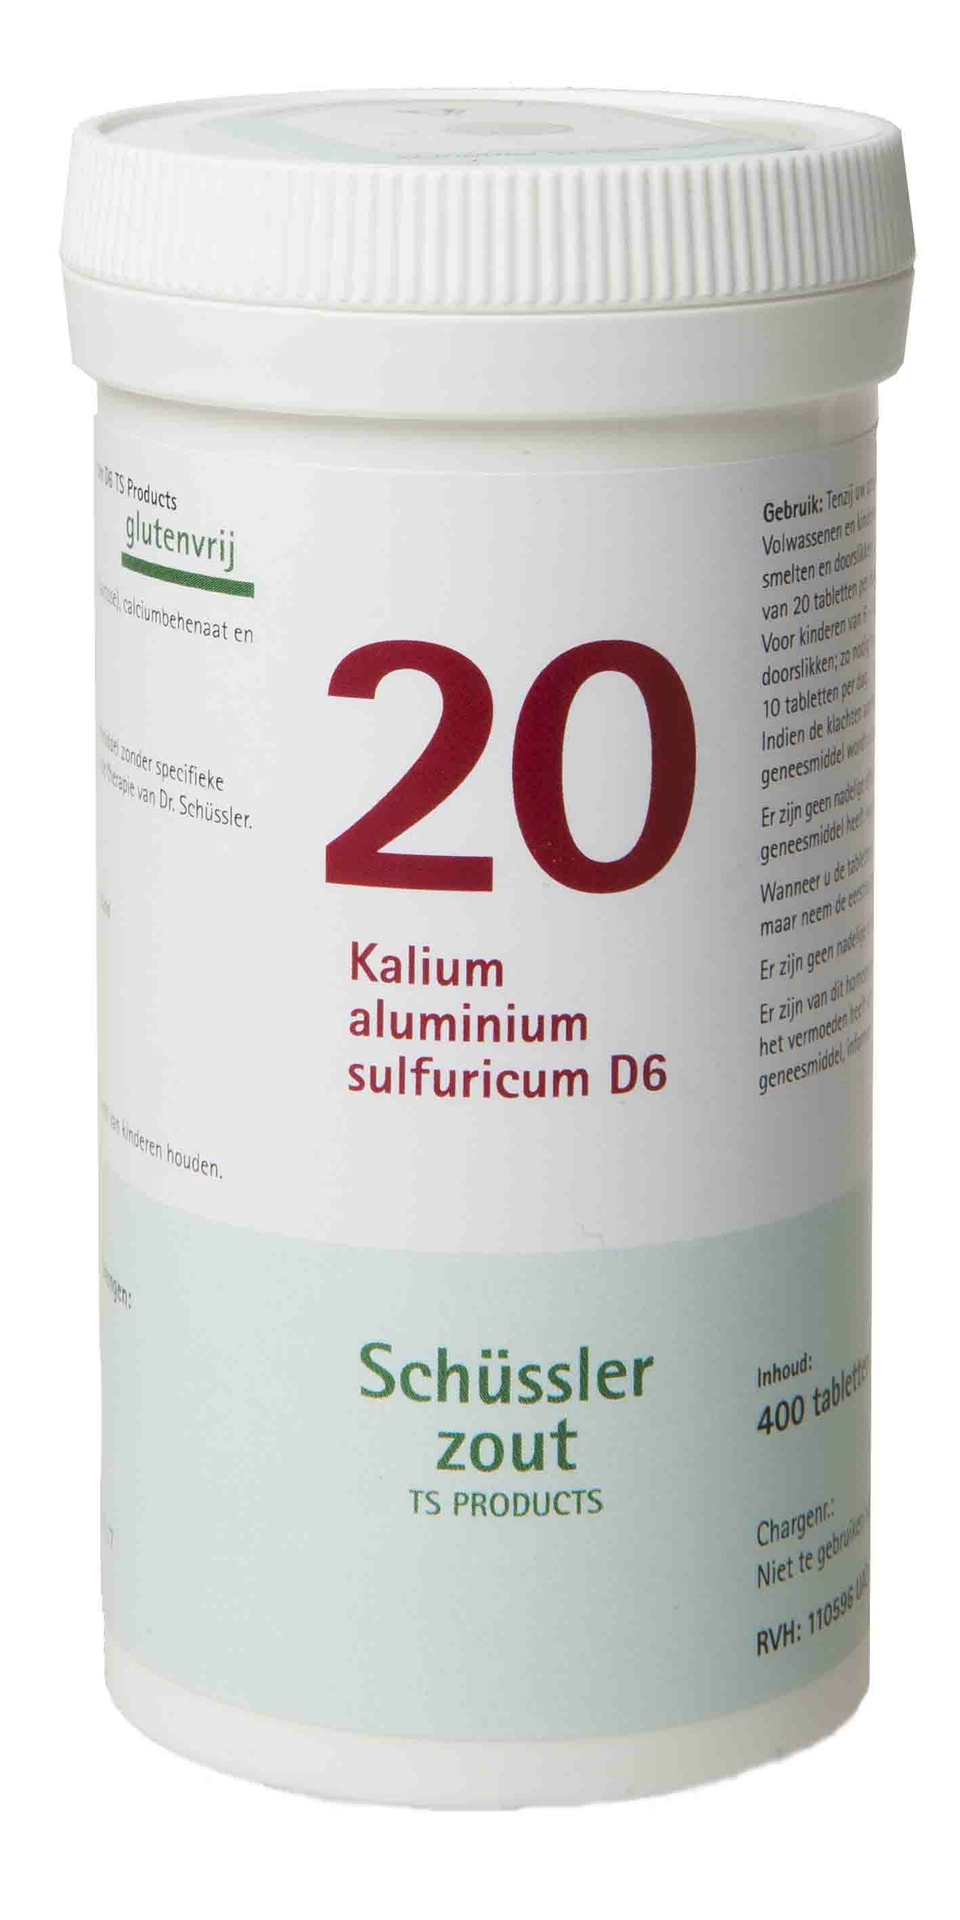 Kalium aluminium sulfuricum